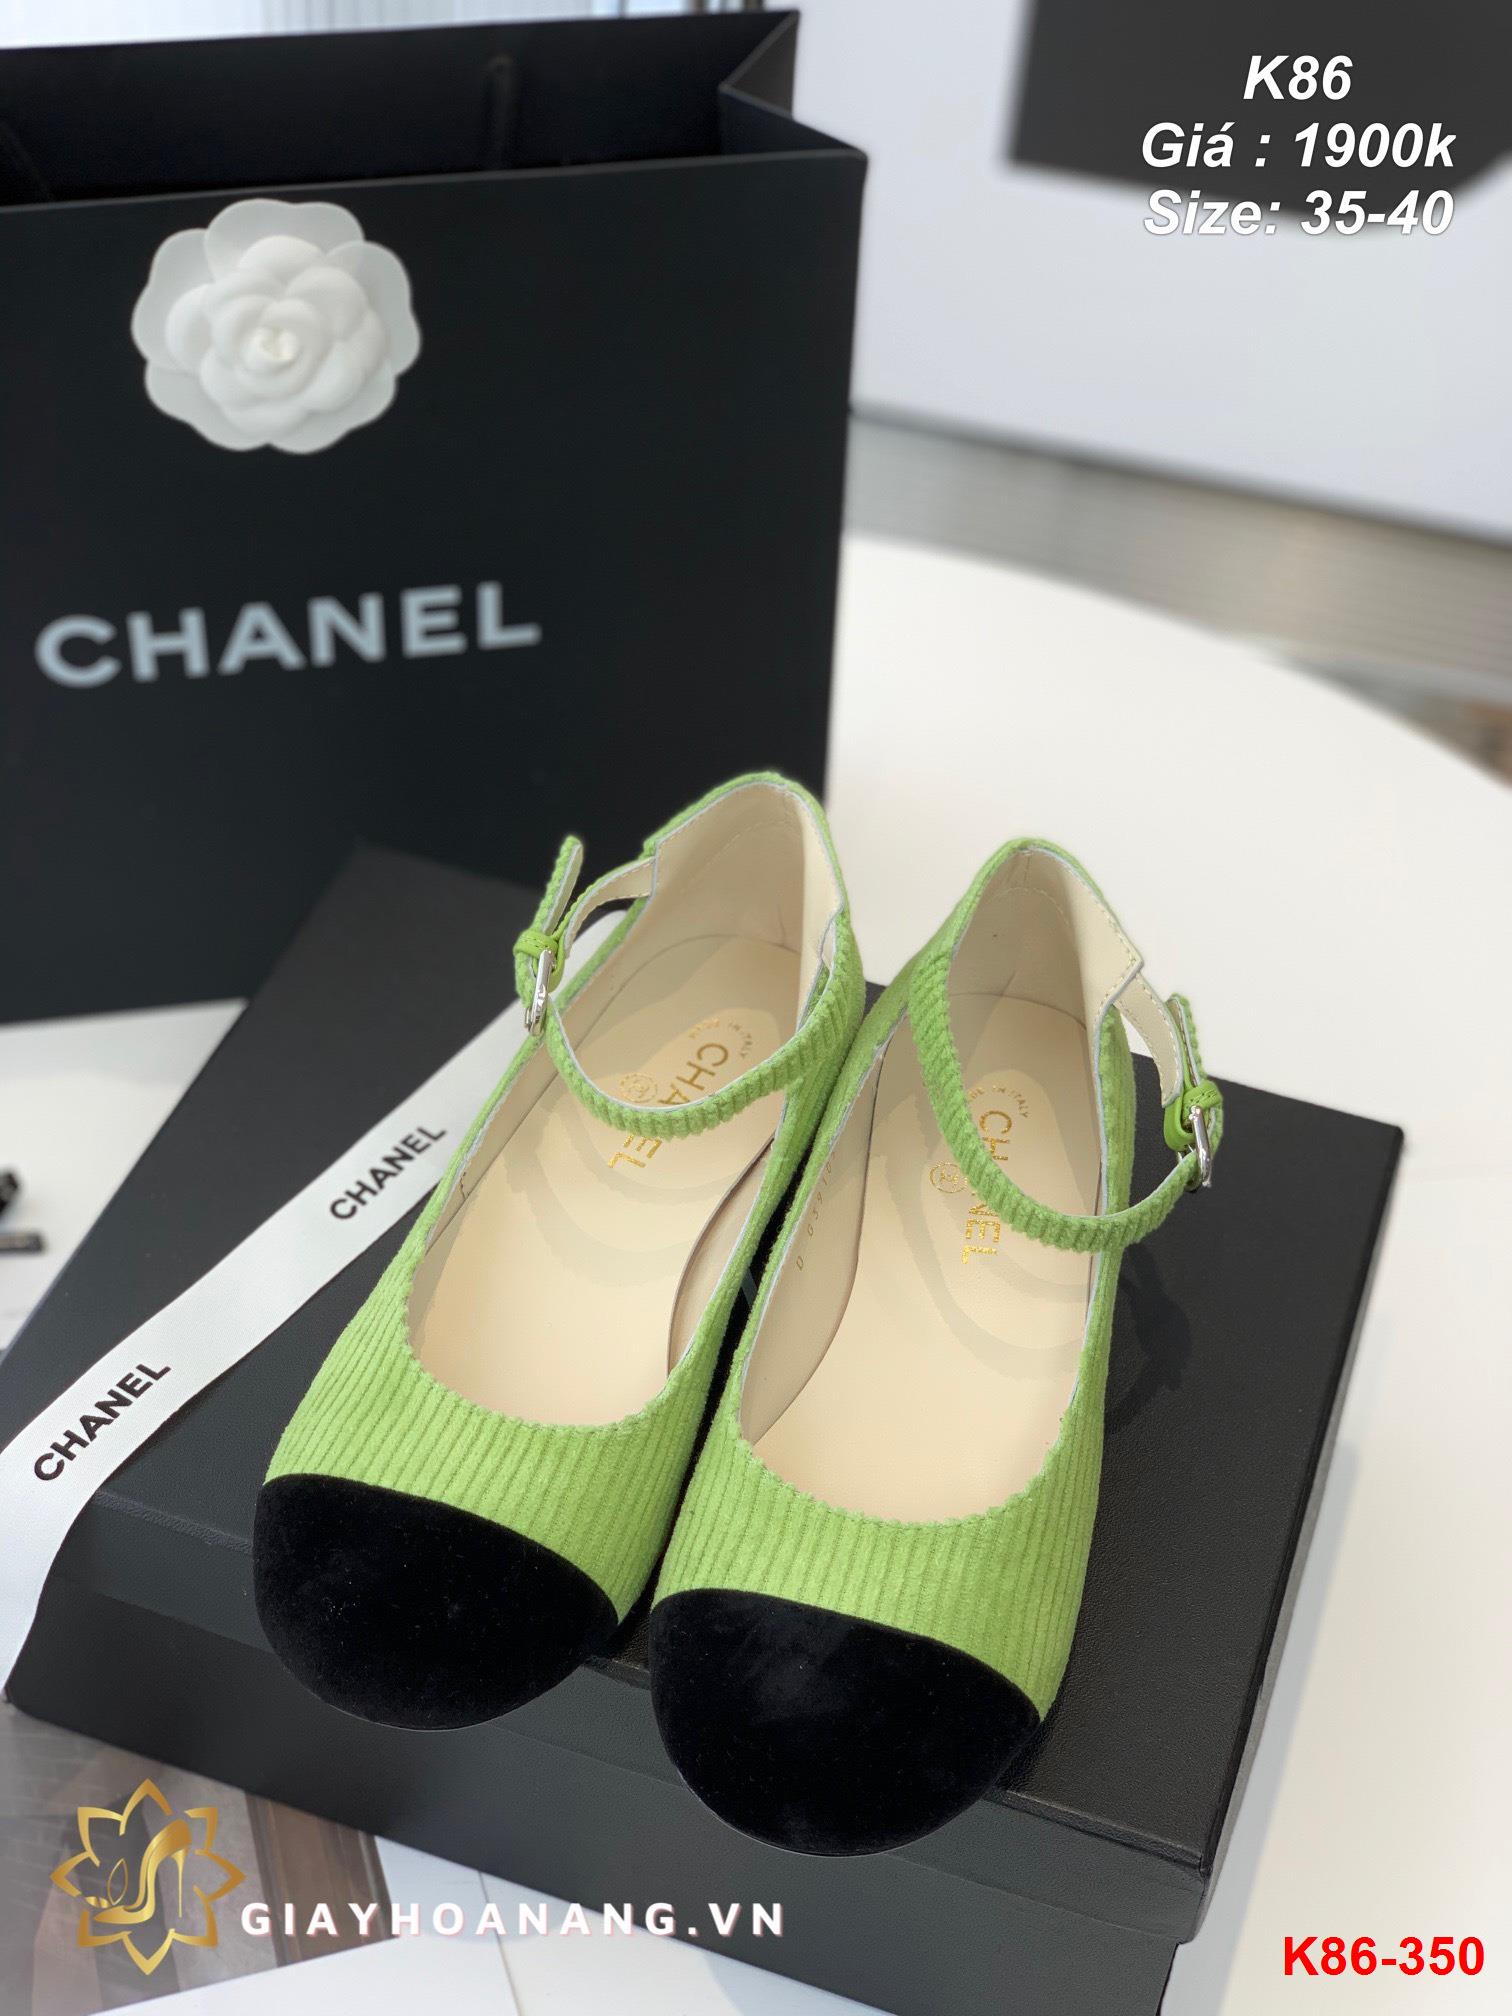 K86-350 Chanel sandal siêu cấp